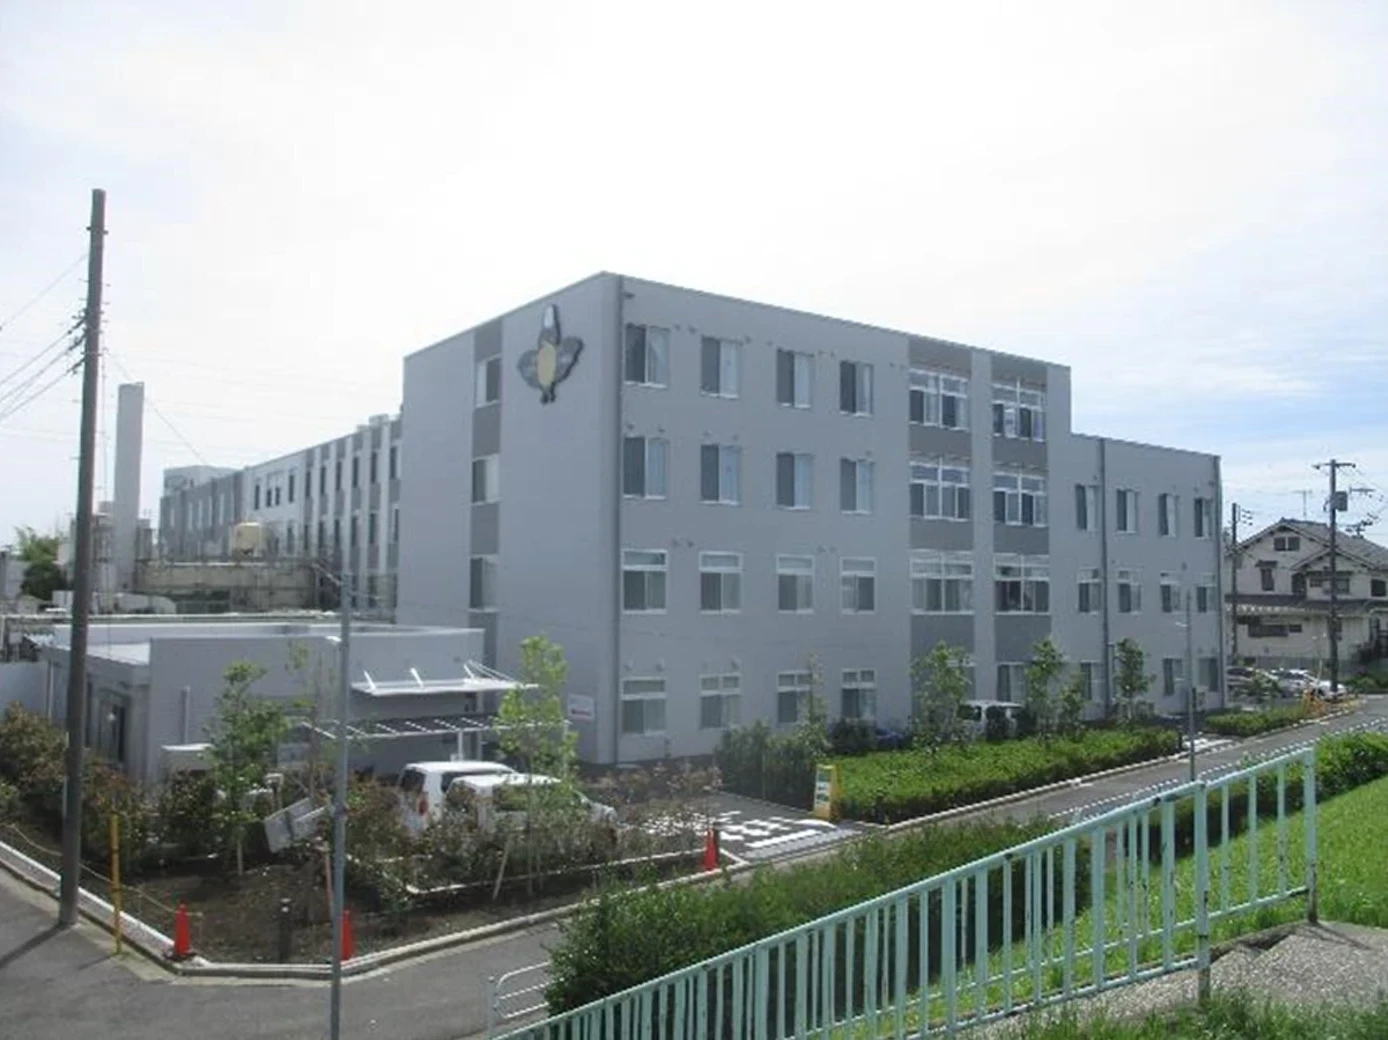 江戸川メディケア病院